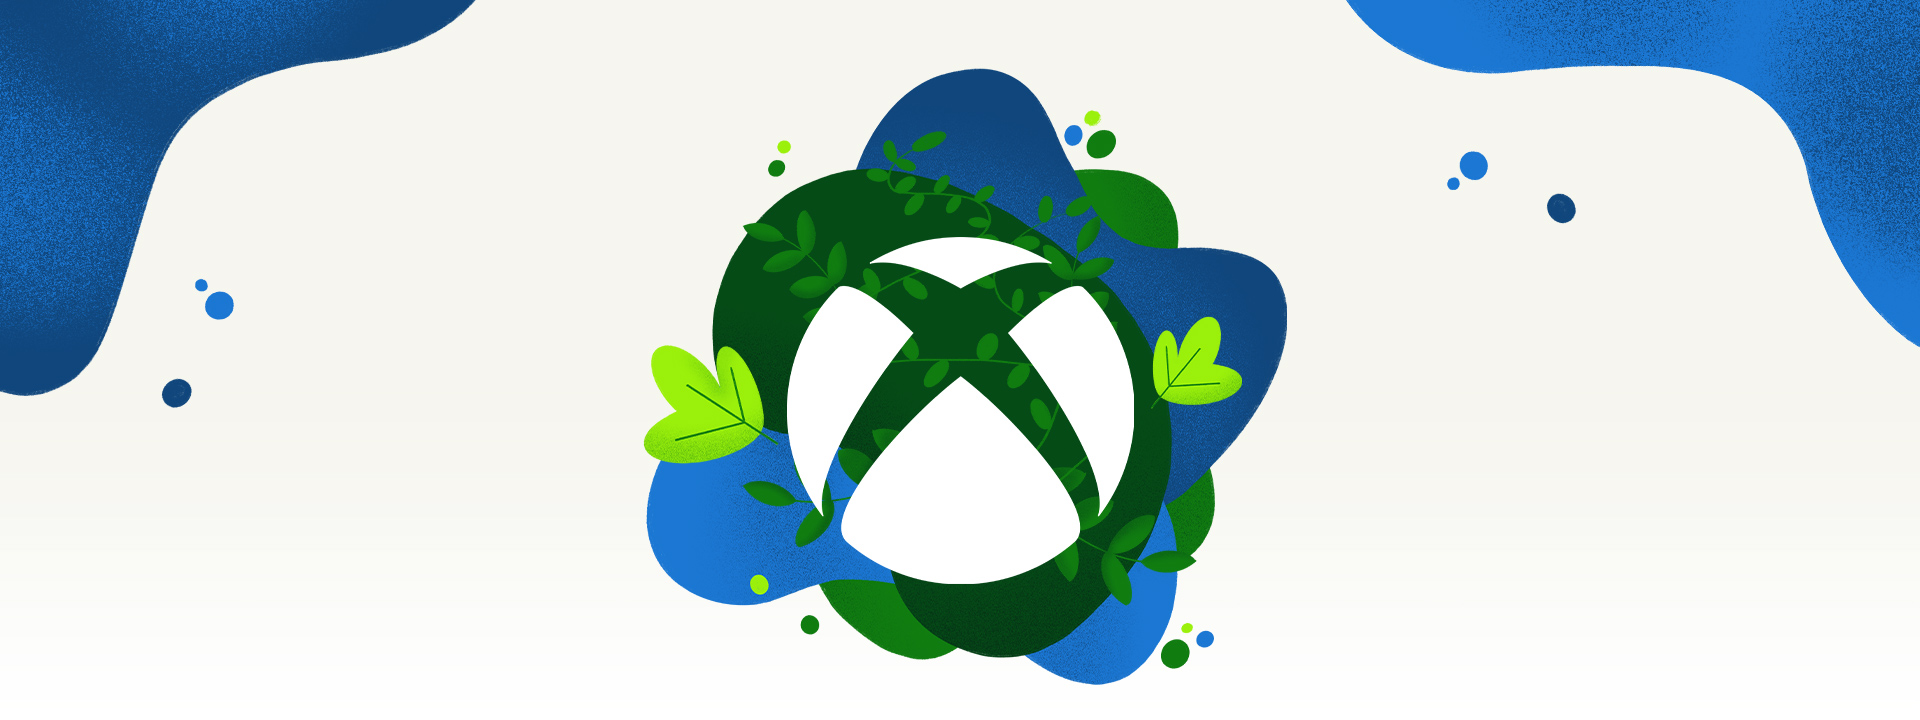 Un logo Xbox planté au milieu de végétation et dʼéclaboussures dʼeau bleue.